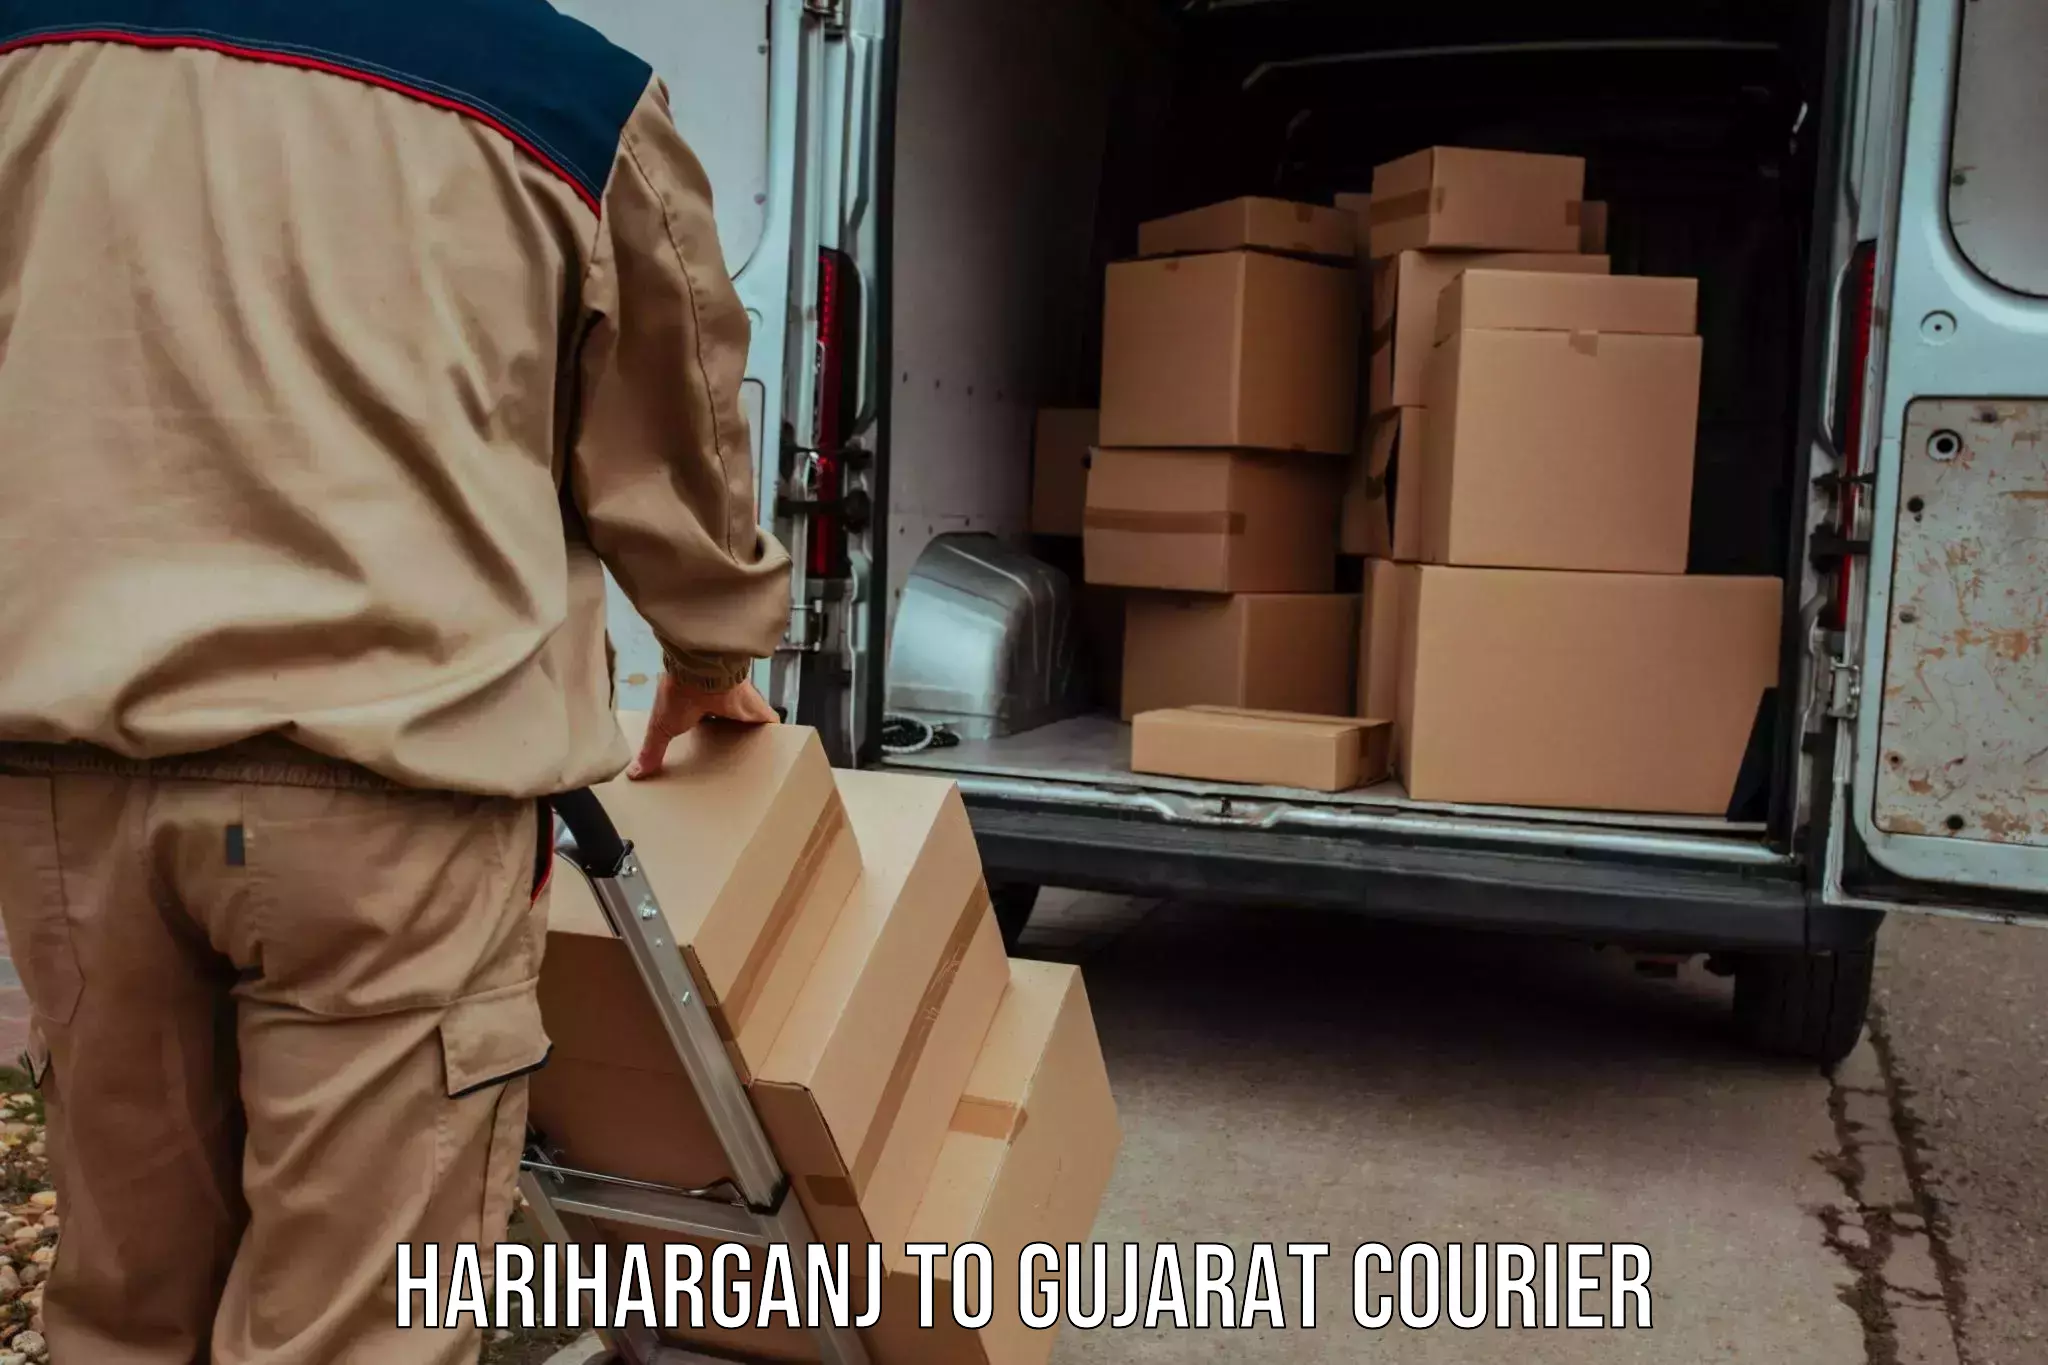 Express postal services Hariharganj to Gujarat